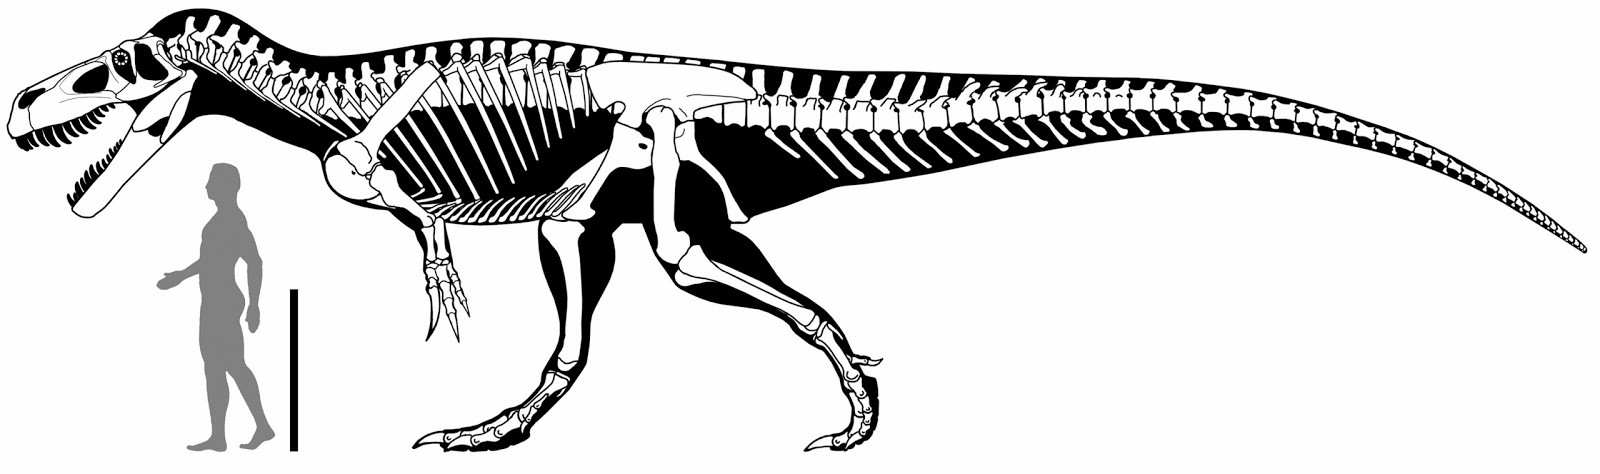 Torvossauros2.jpg